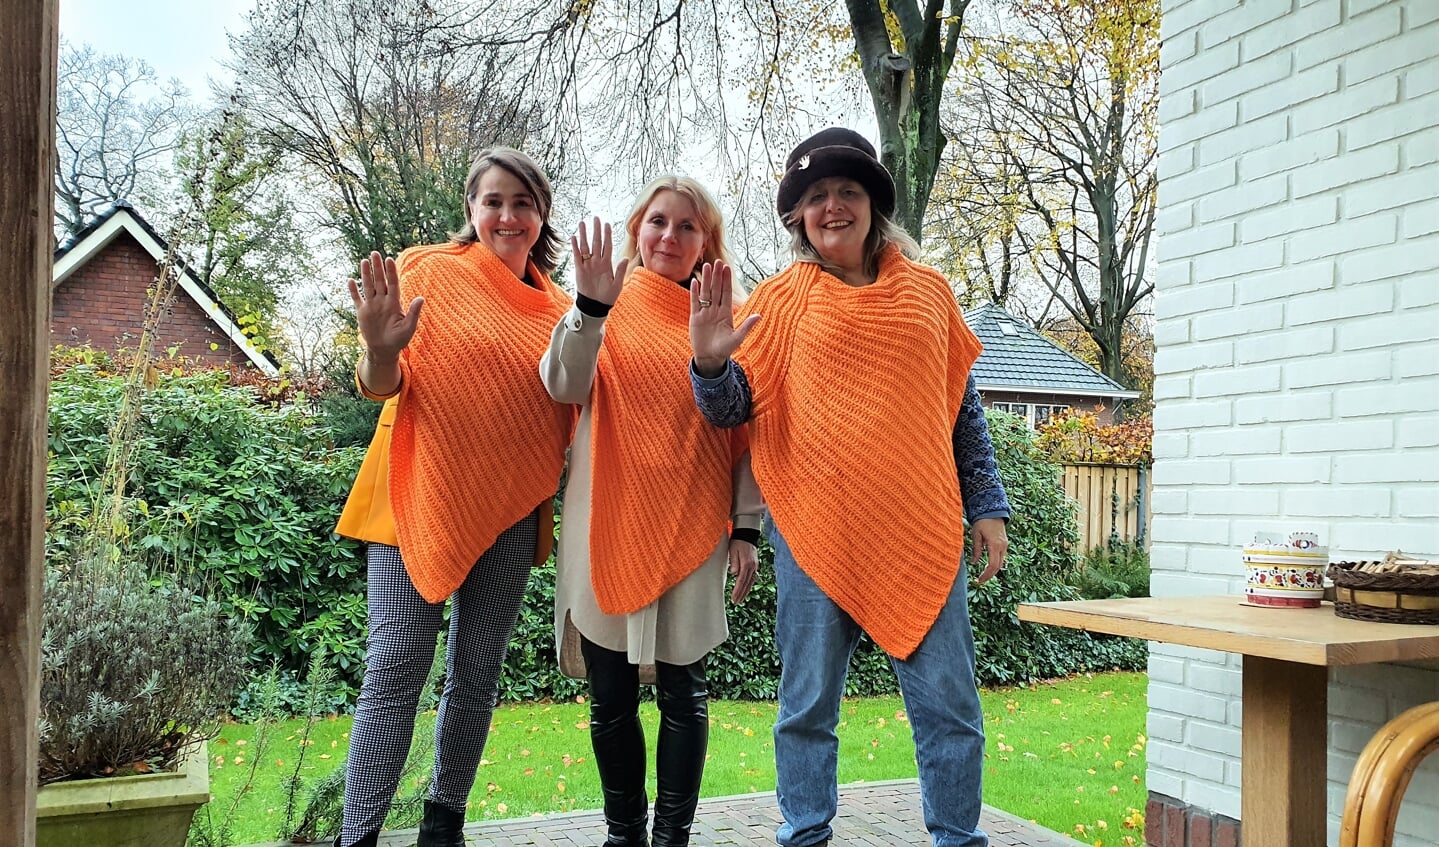 Liane Vissers van ’t Hof, Marjo Mosch en Annemarie Willems (vrnl) symboliseren dat het geweld tegen vrouwen moet stoppen.